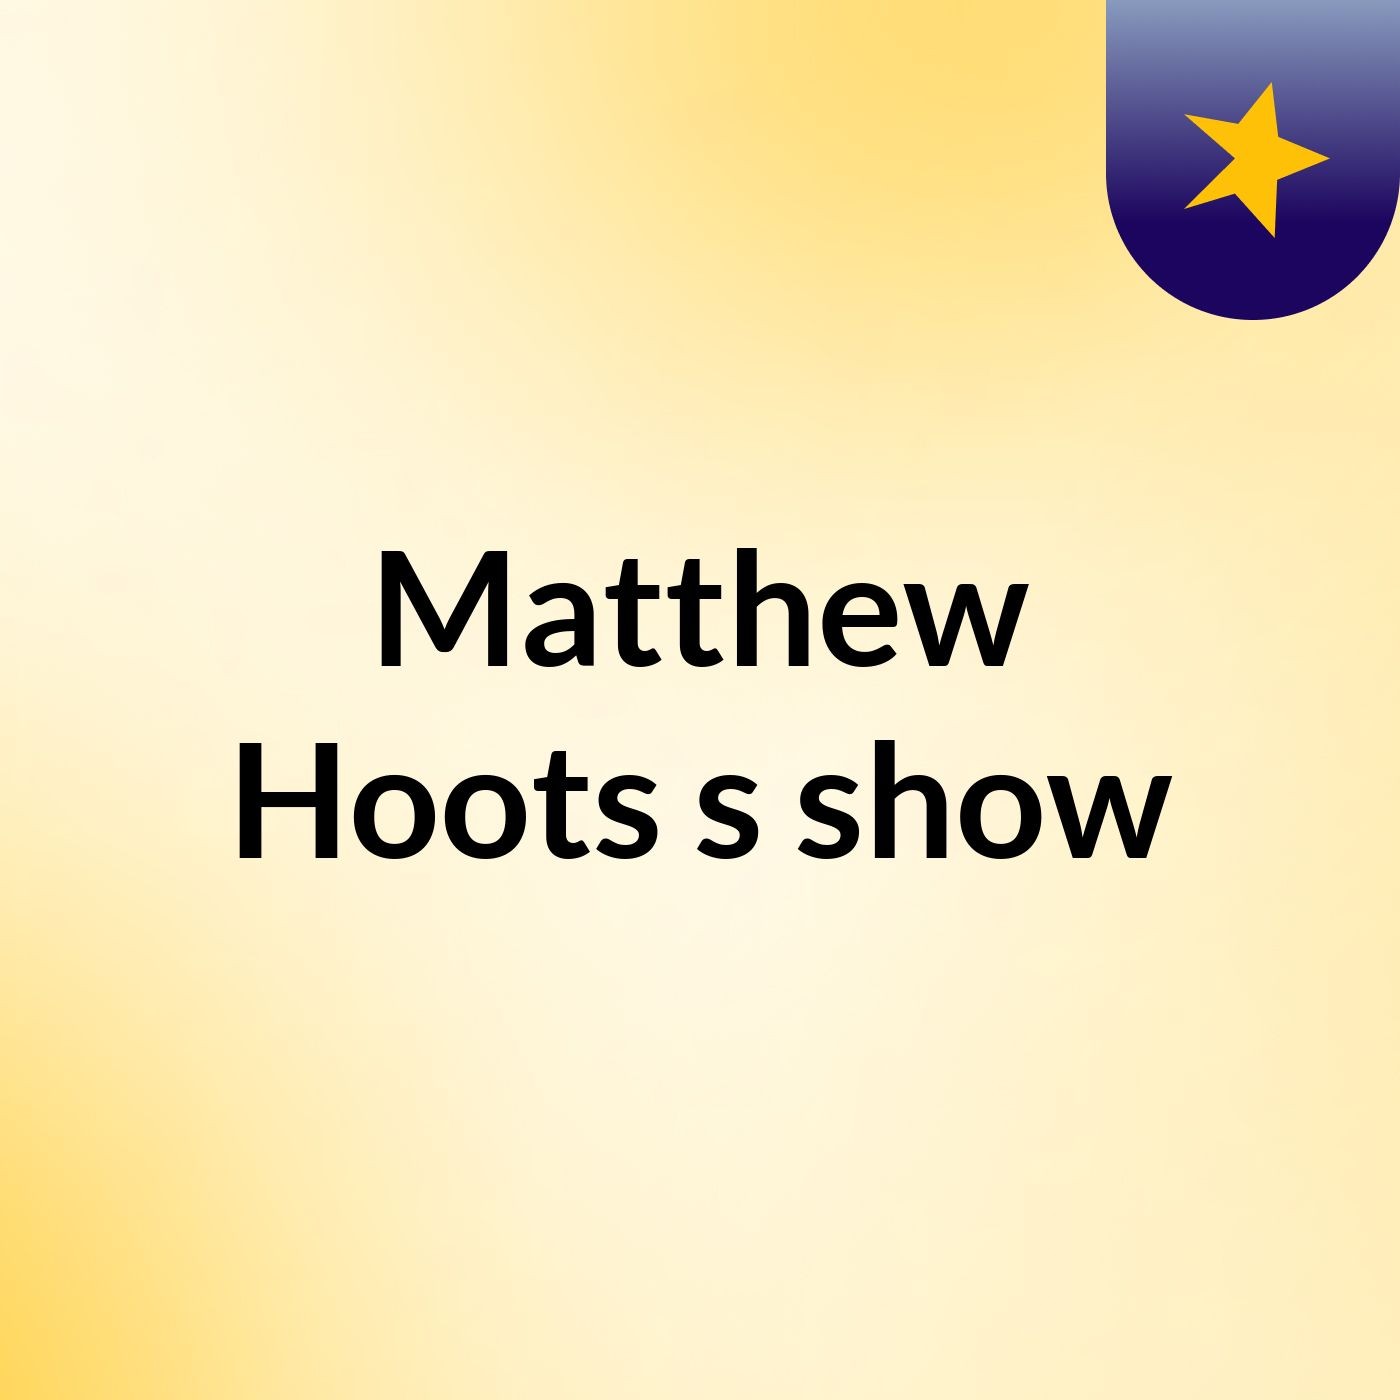 Matthew Hoots's show